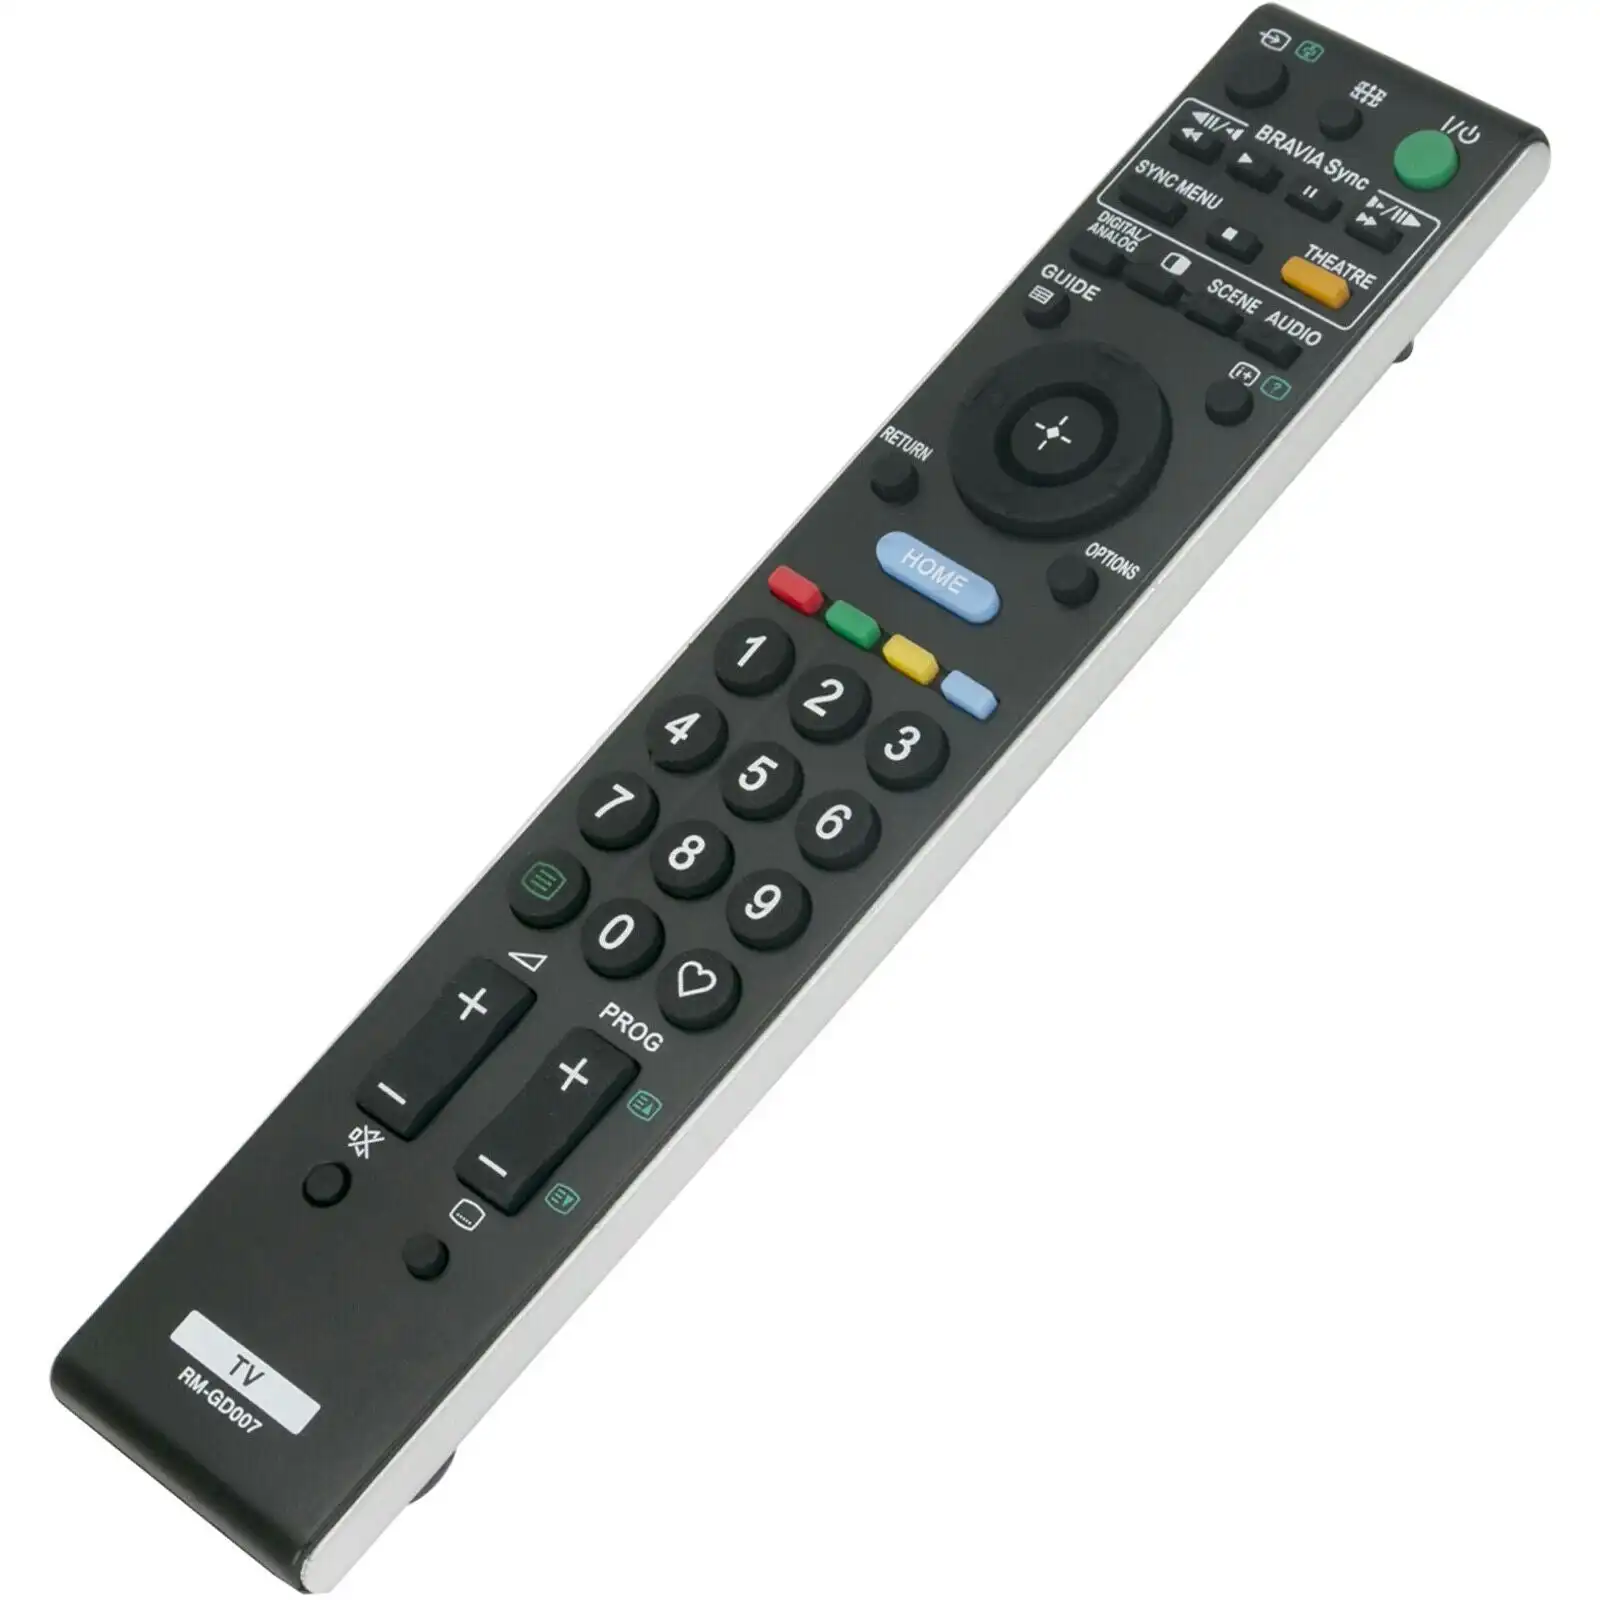 RM-GD007 Remote for Sony Bravia KDL-46WE5 KDL-40W5500 KDL-40WE5 KDL-32W5500